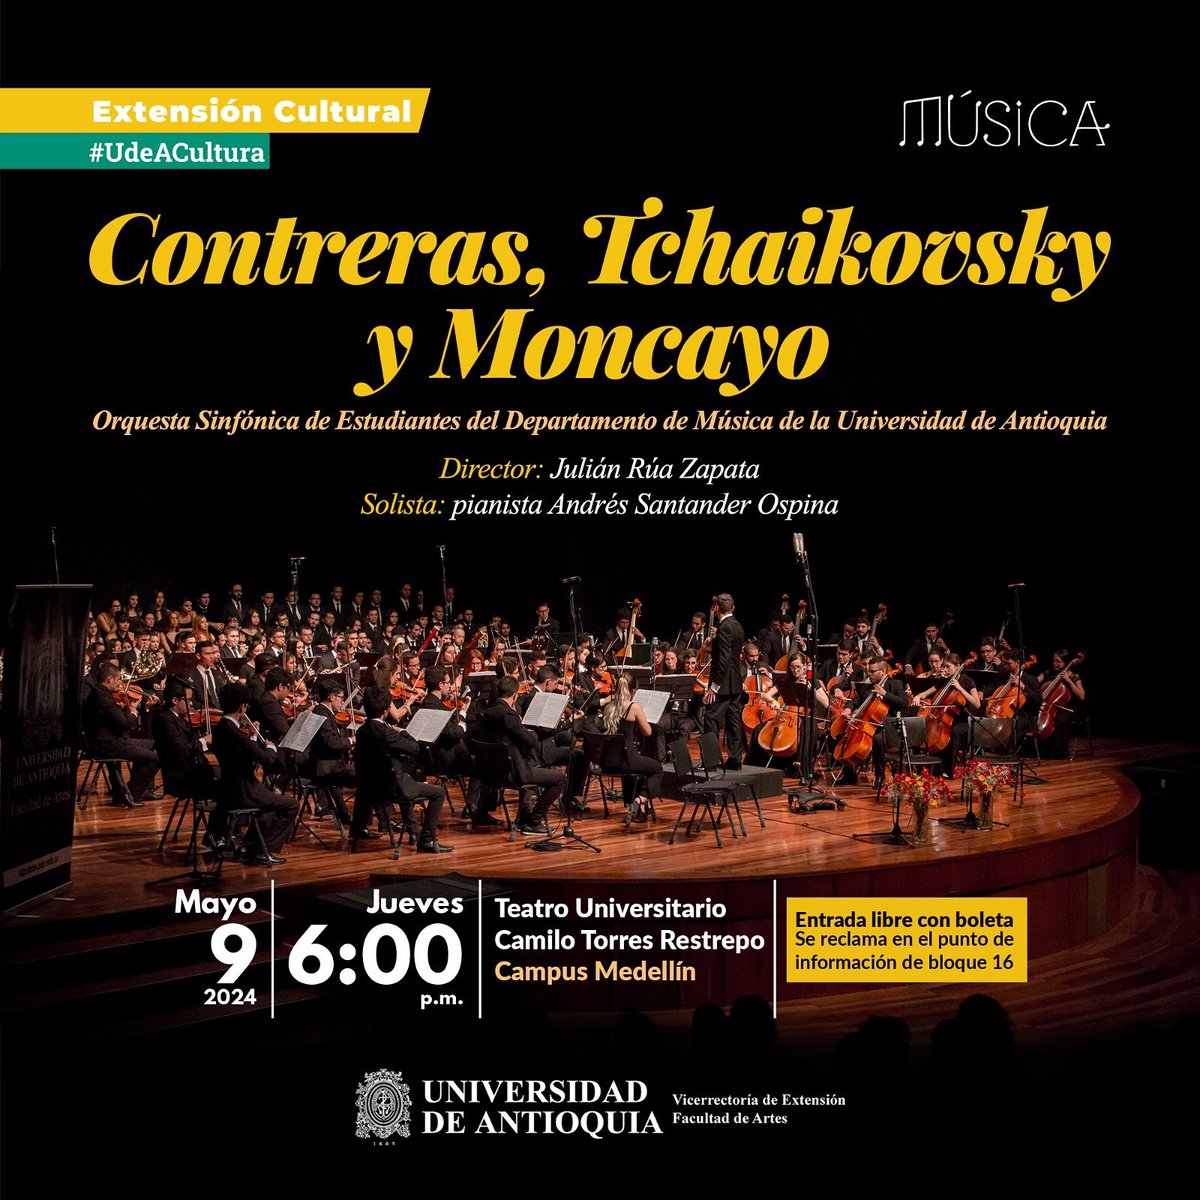 🎻Contreras, Tchaikovsky y Moncayo interpretados por la 𝗢𝗿𝗾𝘂𝗲𝘀𝘁𝗮 𝗦𝗶𝗻𝗳𝗼́𝗻𝗶𝗰𝗮 𝗱𝗲 𝗘𝘀𝘁𝘂𝗱𝗶𝗮𝗻𝘁𝗲𝘀 🗓️La cita es el jueves 9 de mayo a las 6:00 p.m. 📍en el Teatro Universitario. 🎟️La entrada es libre, con boleta. Más info aquí: 👉🏻bit.ly/OrquestaEstudi…